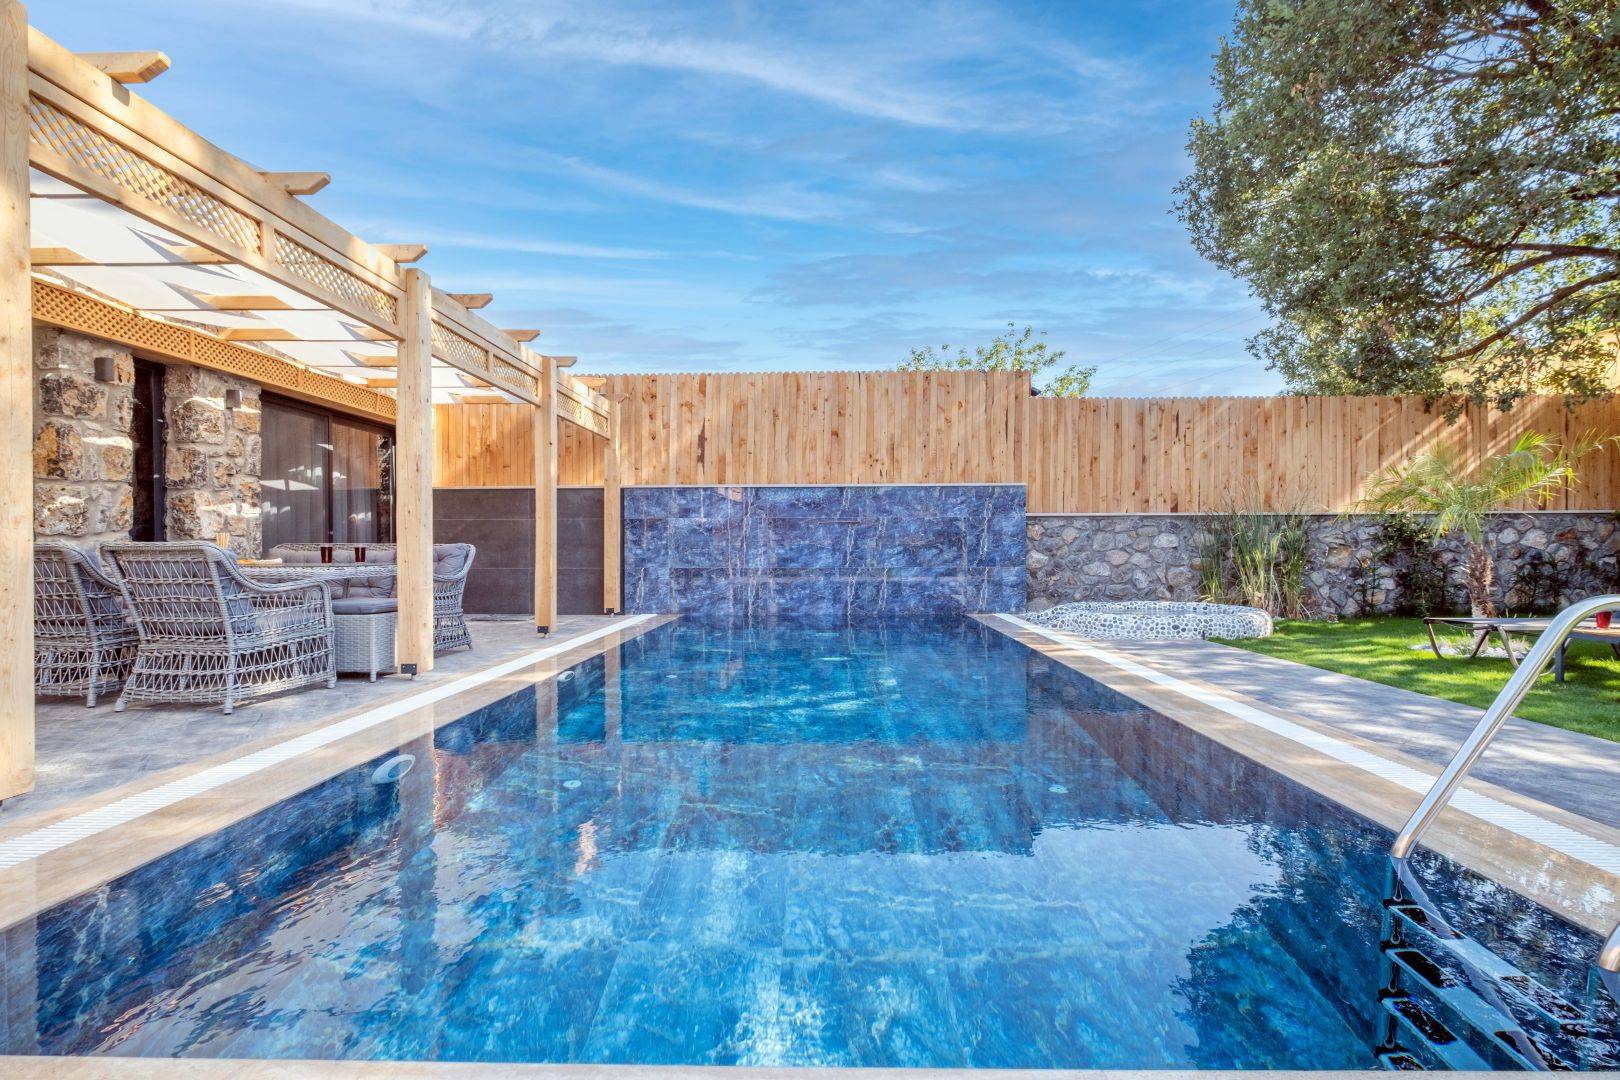 Fethiye Kayaköy'de Modern Tasarımlı, Özel Havuzlu, Kiralık Lüks Villa